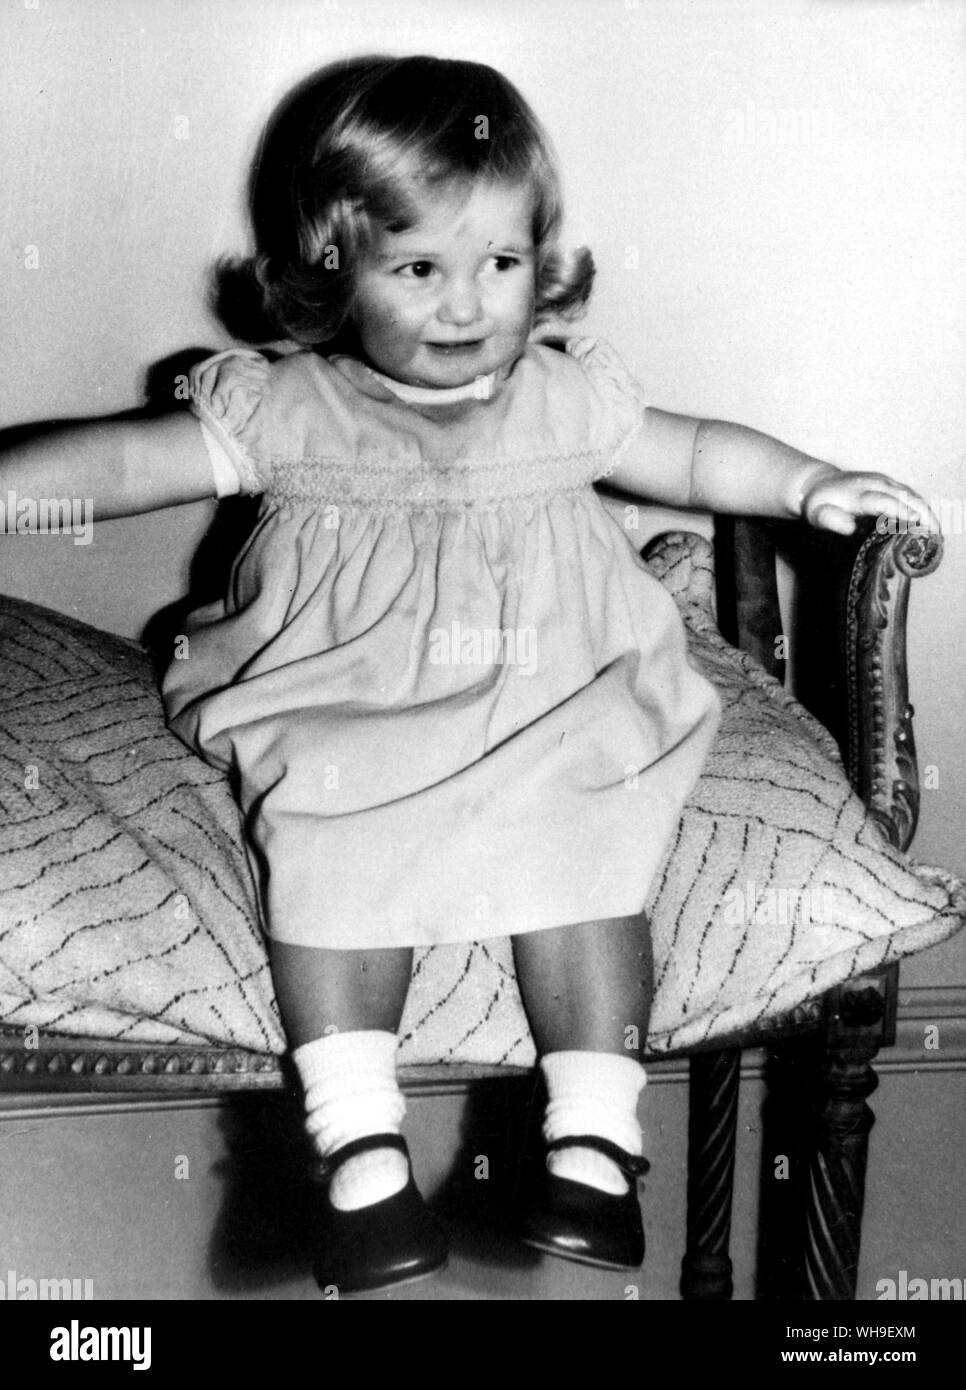 Lady Diana Spencer (1961-1997) im Alter von 2 Jahren, die mi Charles Prince of Wales im Juli 1981 Prinzessin Diana zu werden. Stockfoto